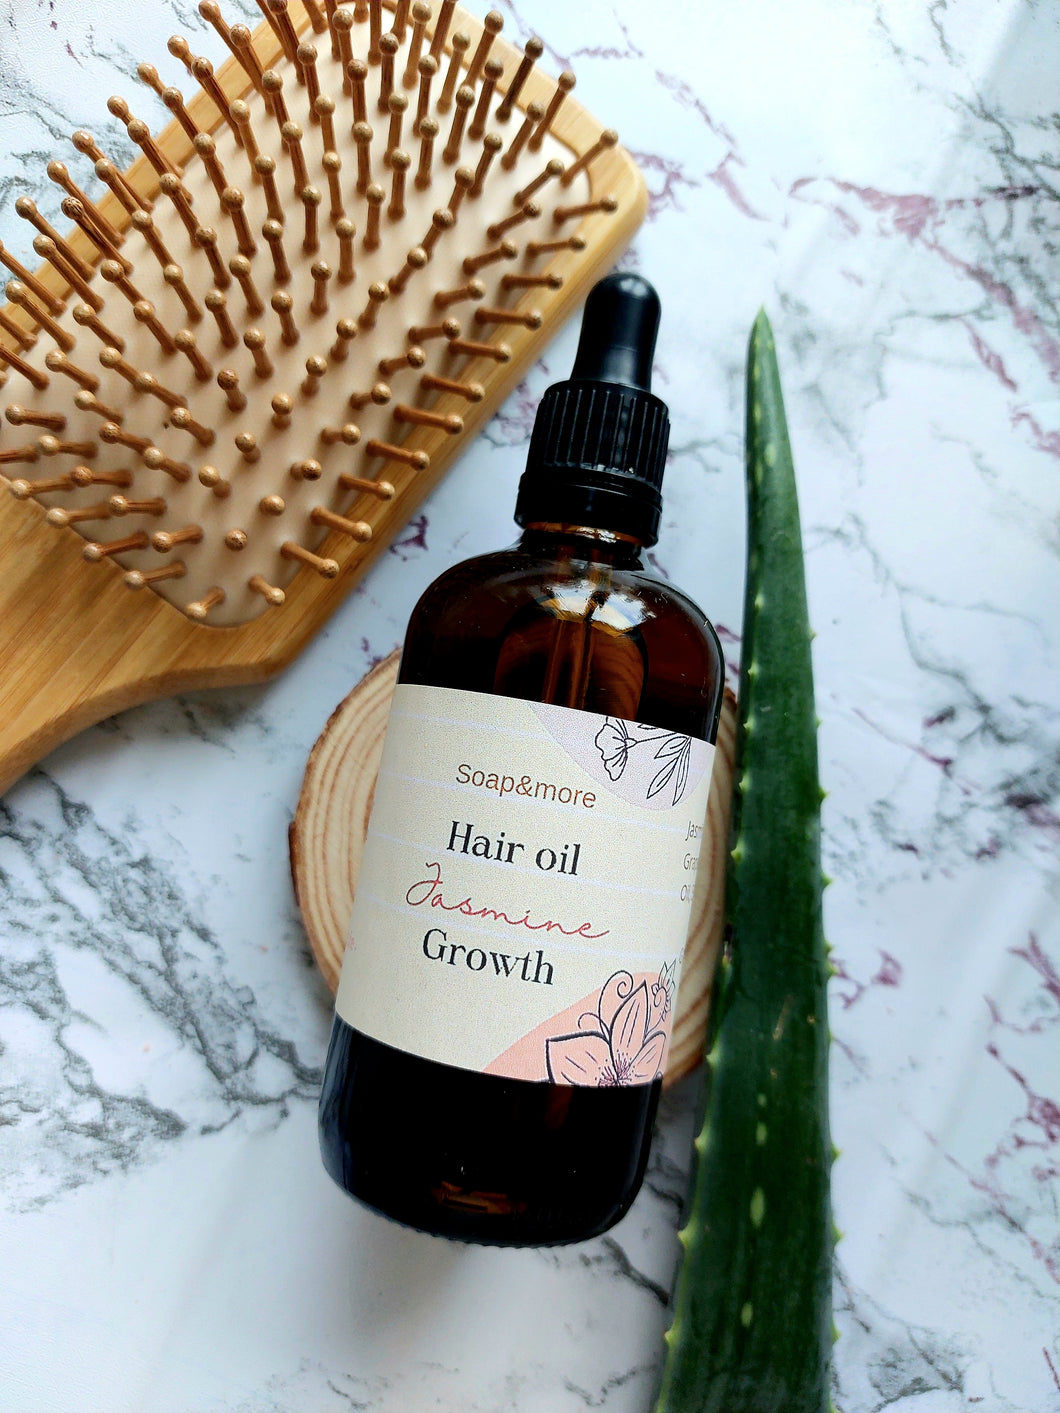 Jasmine hair oil (Growth) 50ml